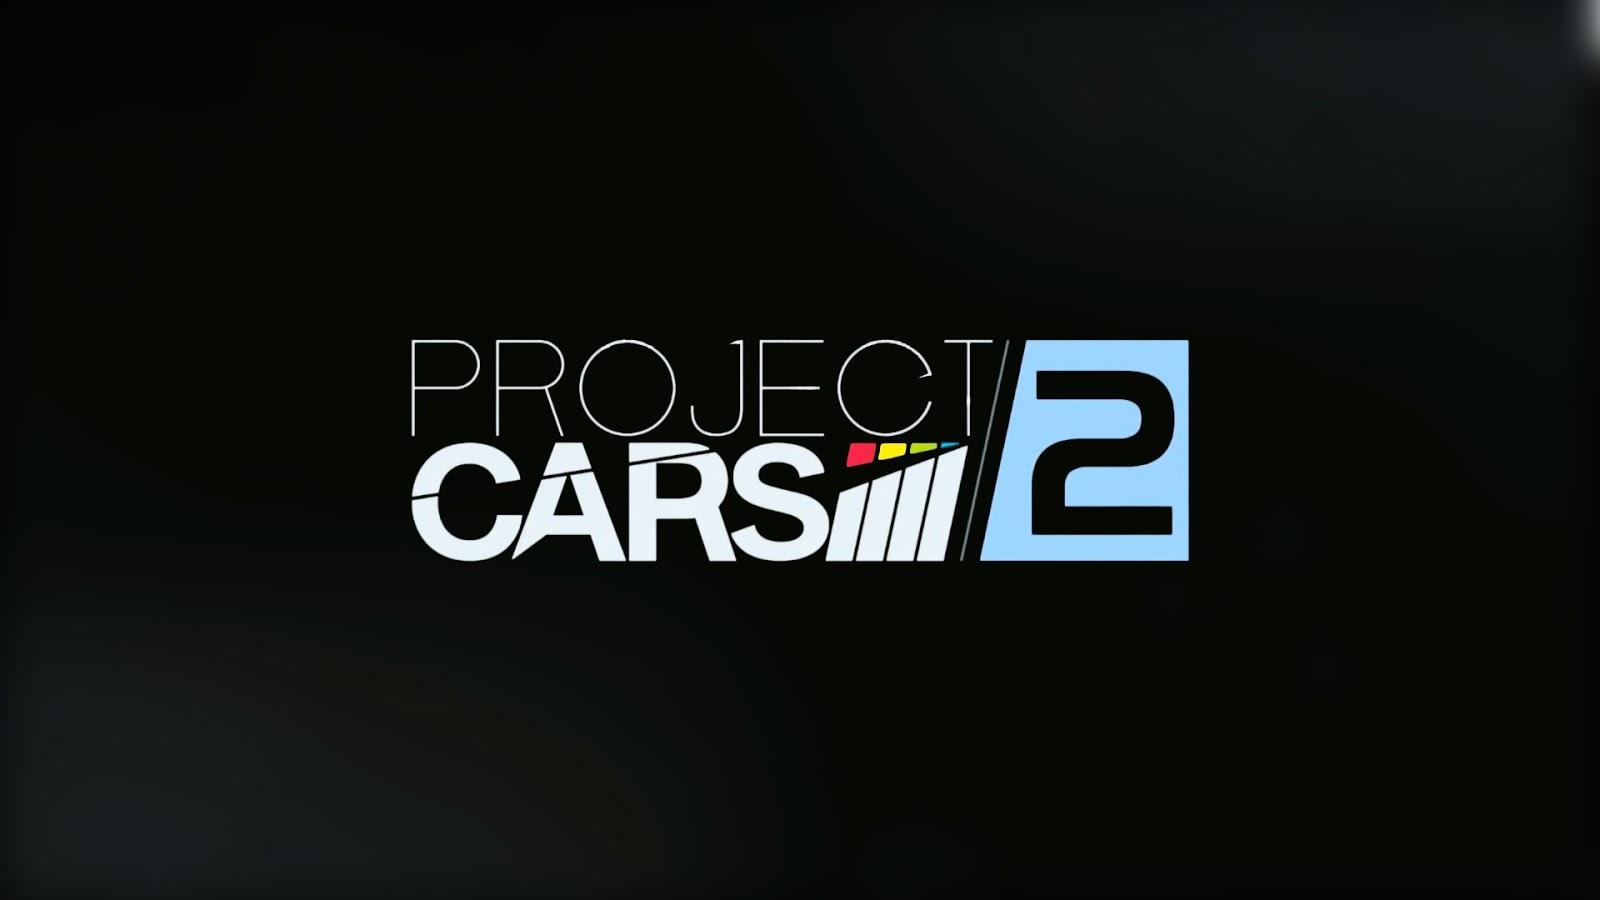 Project Cars 2 HD Wallpaper 18 X 900